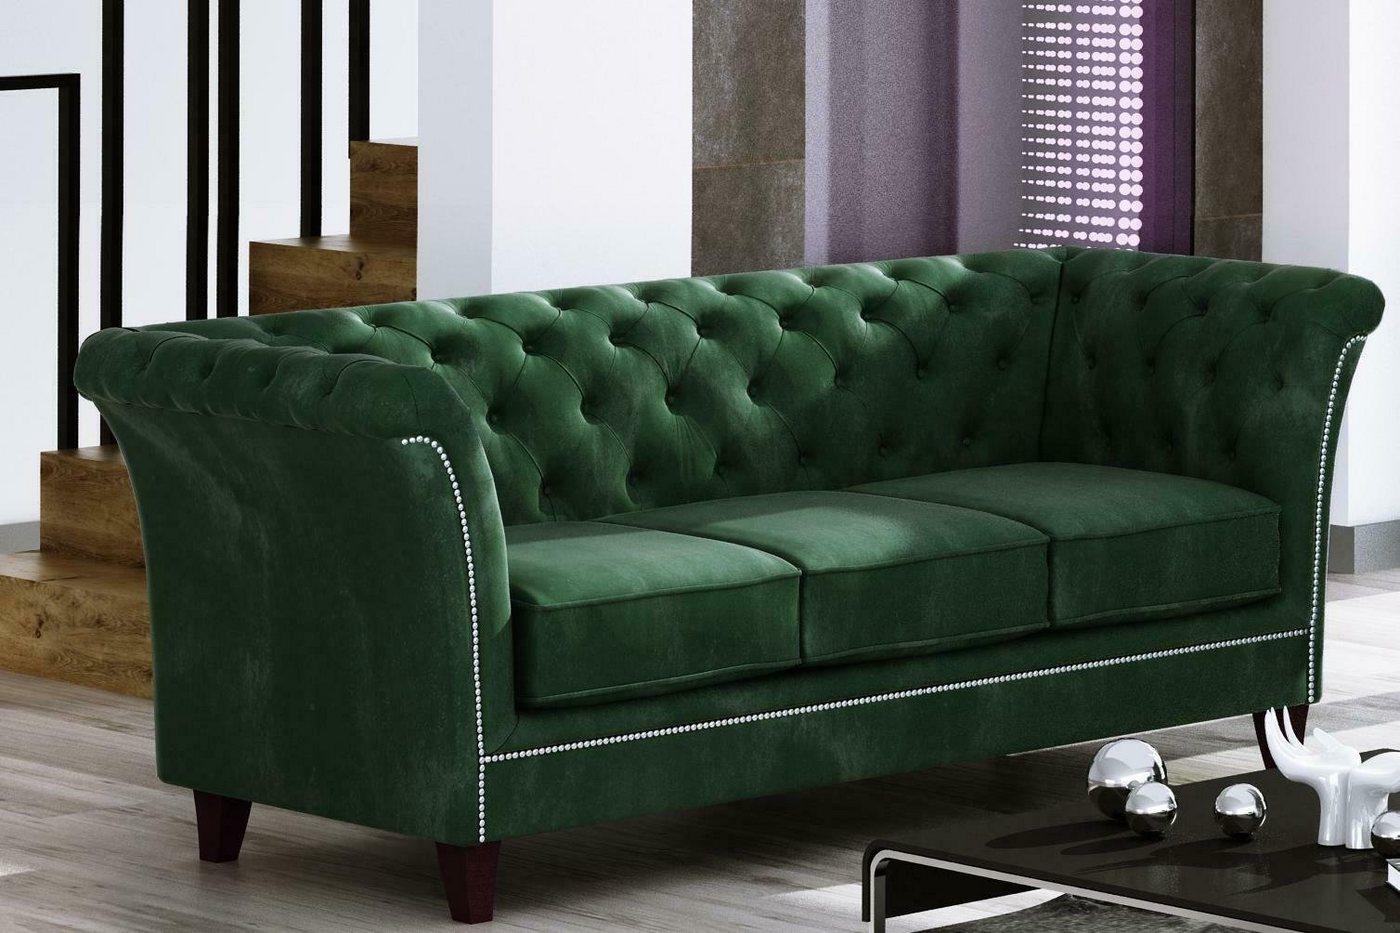 JVmoebel Sofa Grüner Dreisitzer Chesterfield Möbel Luxus 3-Sitzer Couch Edel Neu, Made in Europe von JVmoebel